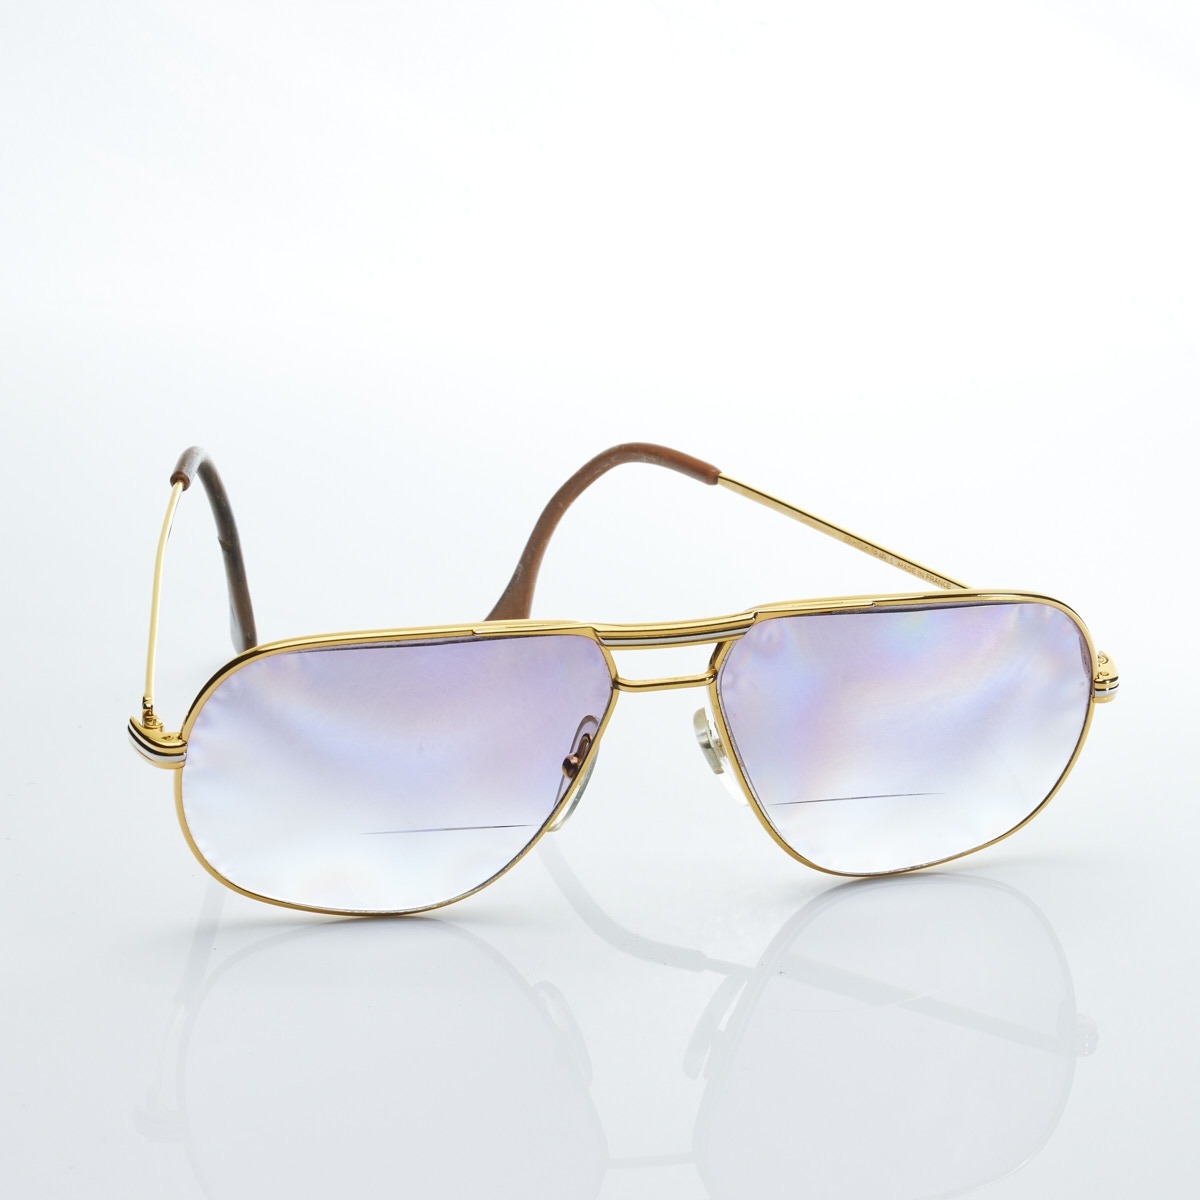 CARTIER - Brille mit geschliffenen, gefärbten Gläsern in Schatulle - Image 2 of 2